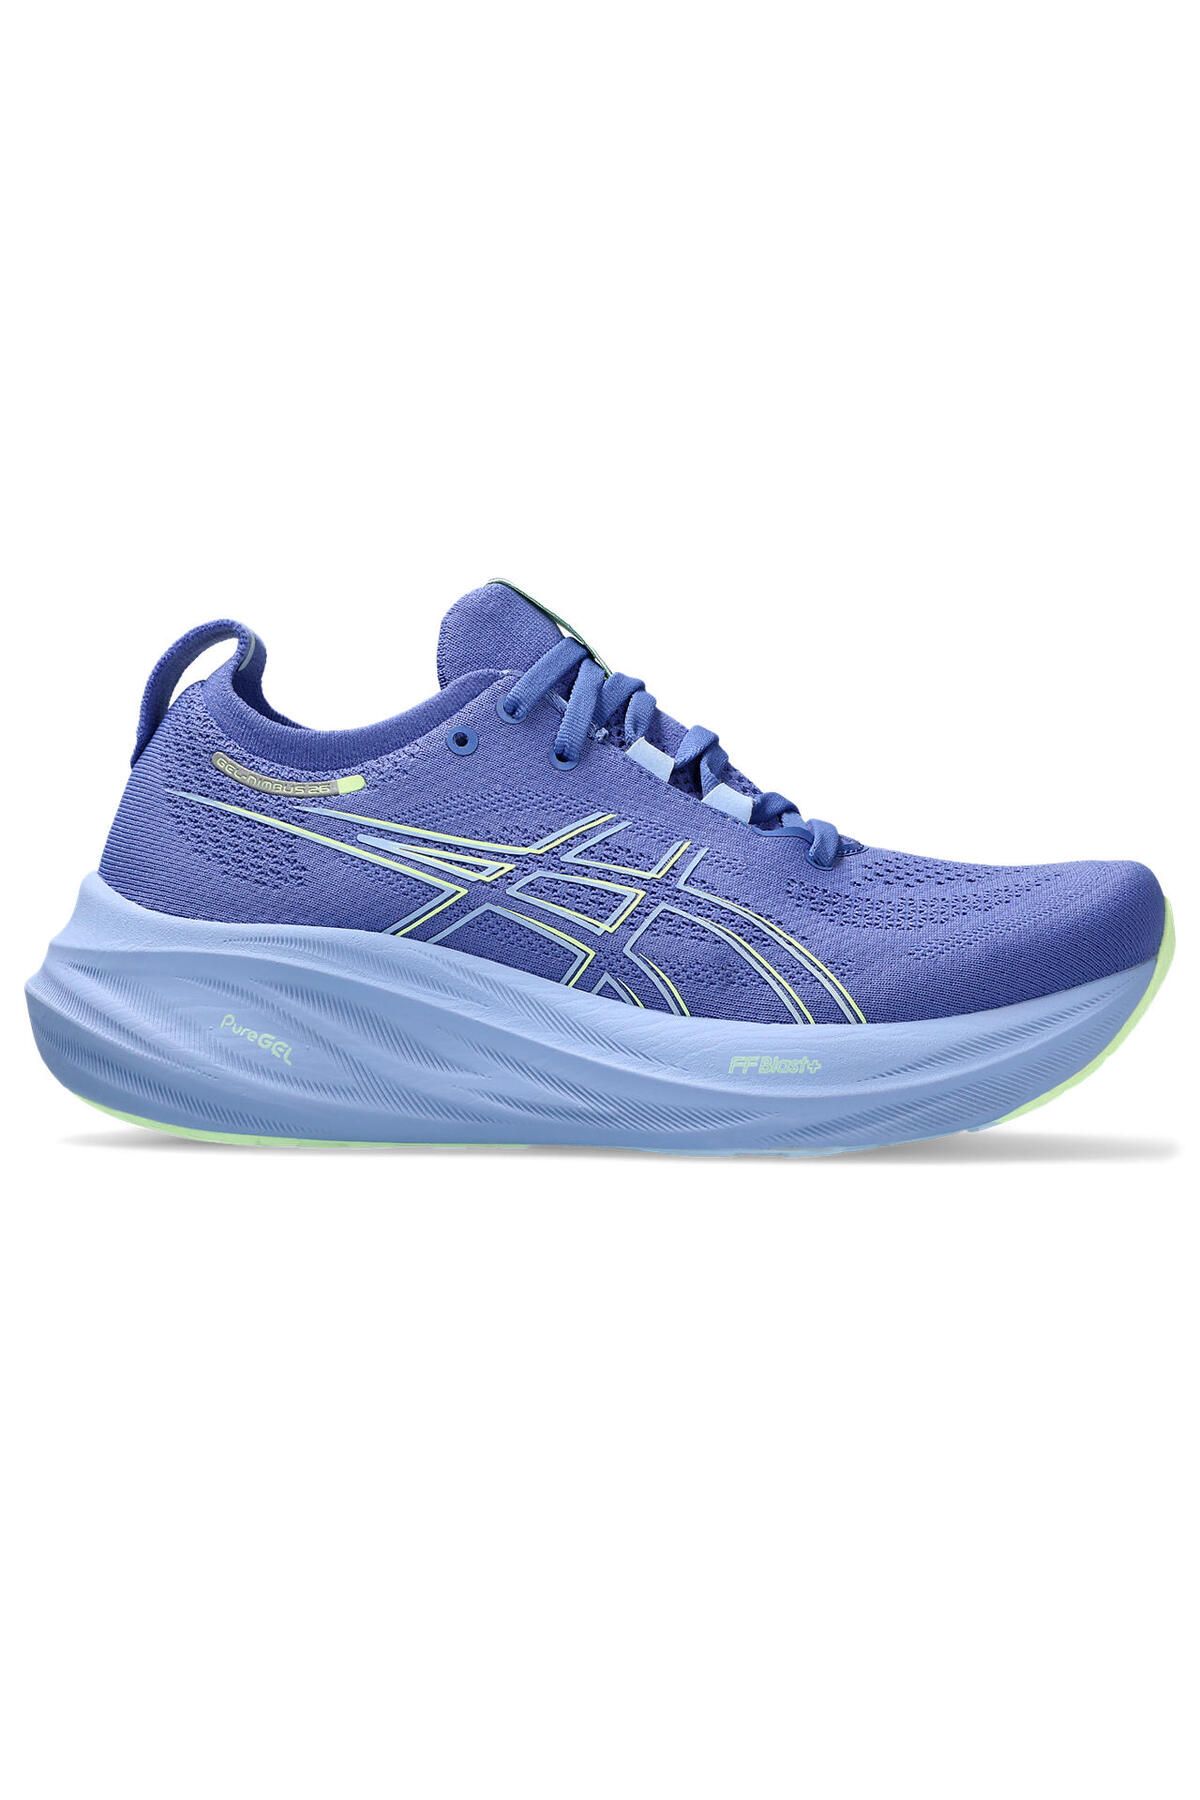 Asics Gel-Nimbus 26 Kadın Mavi Koşu Ayakkabısı 1012B601-401